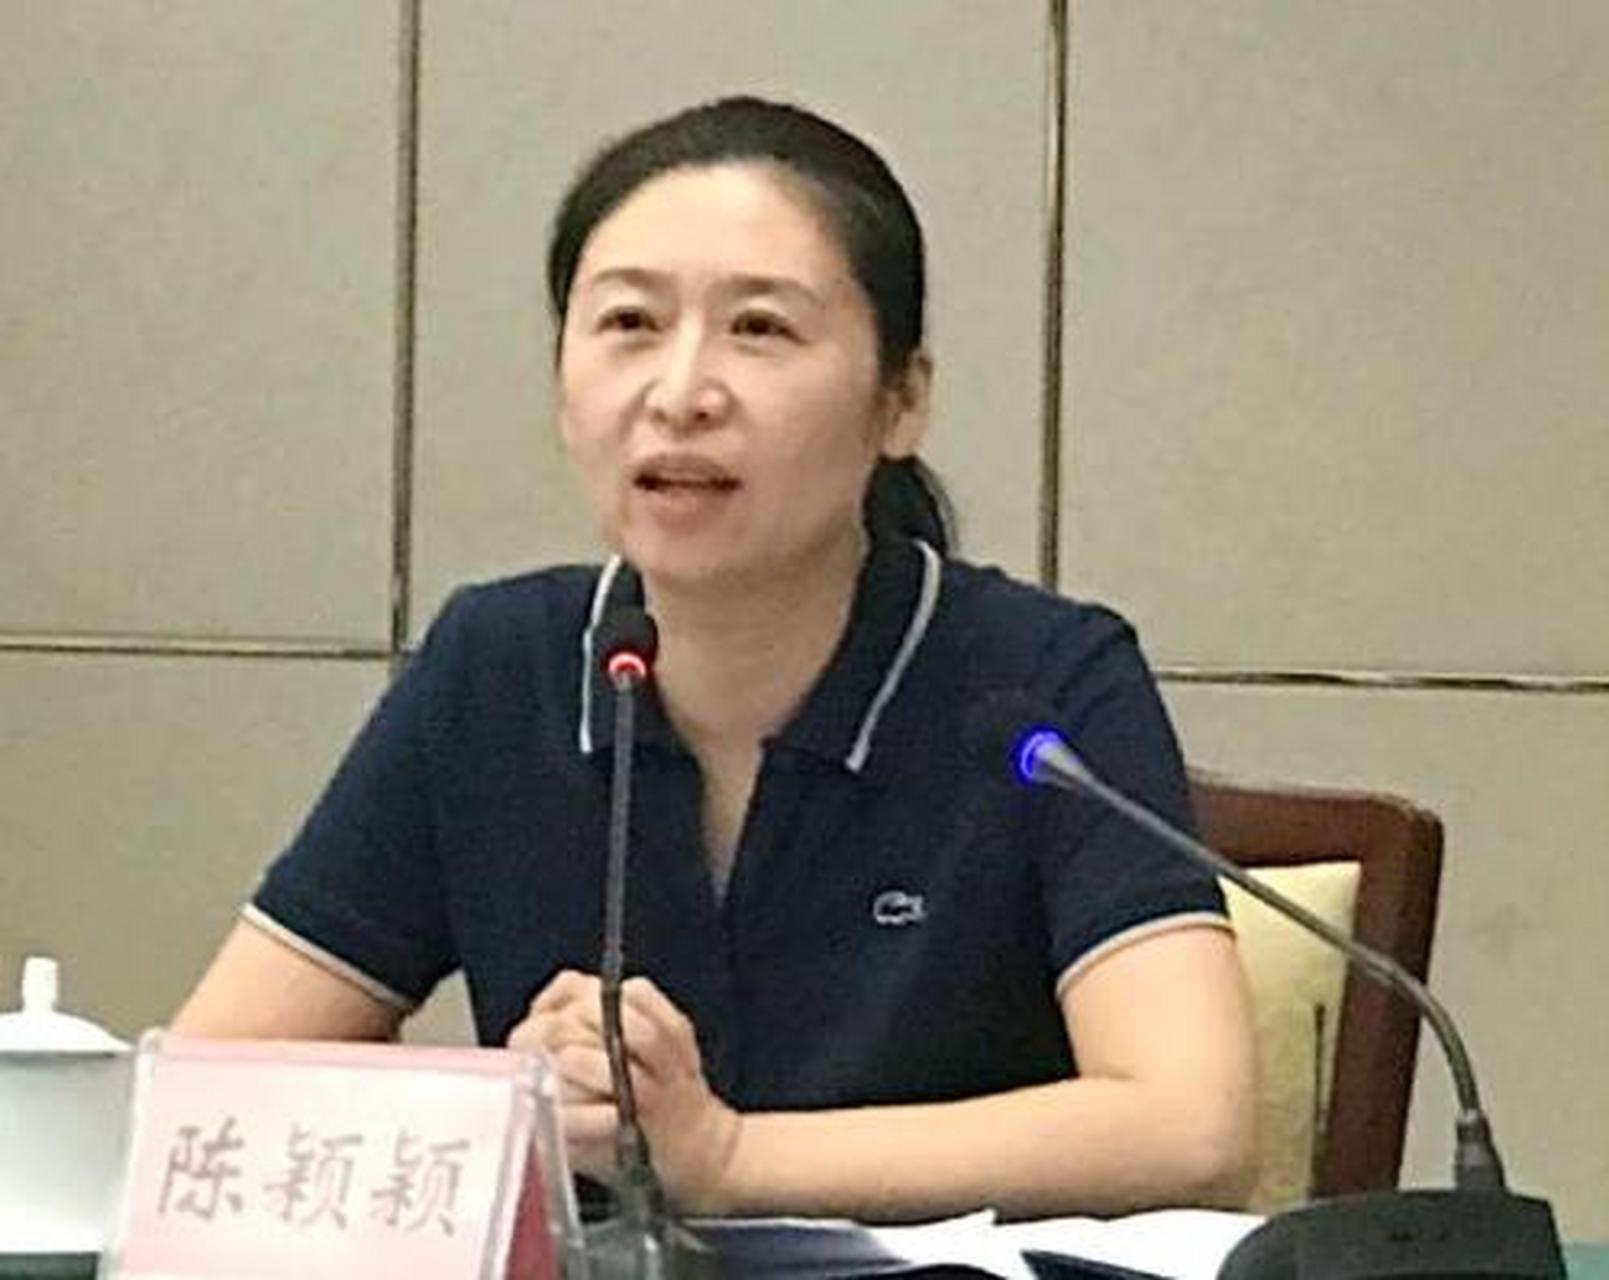 陈颖颖,一个既有颜值又有才华的女性,在此之前曾担任河南省政府发展